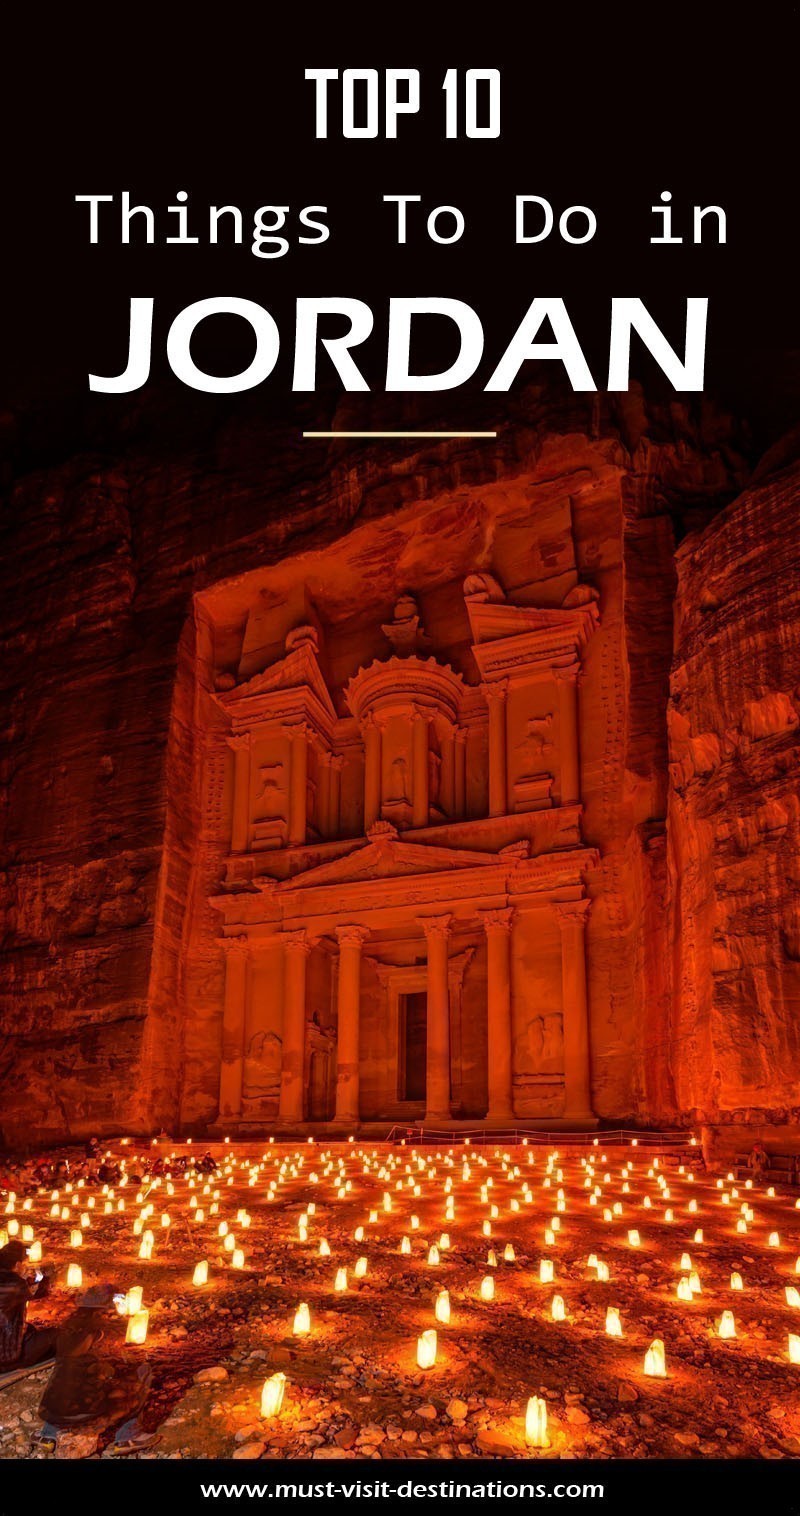 TOP 10 Things To Do in Jordan